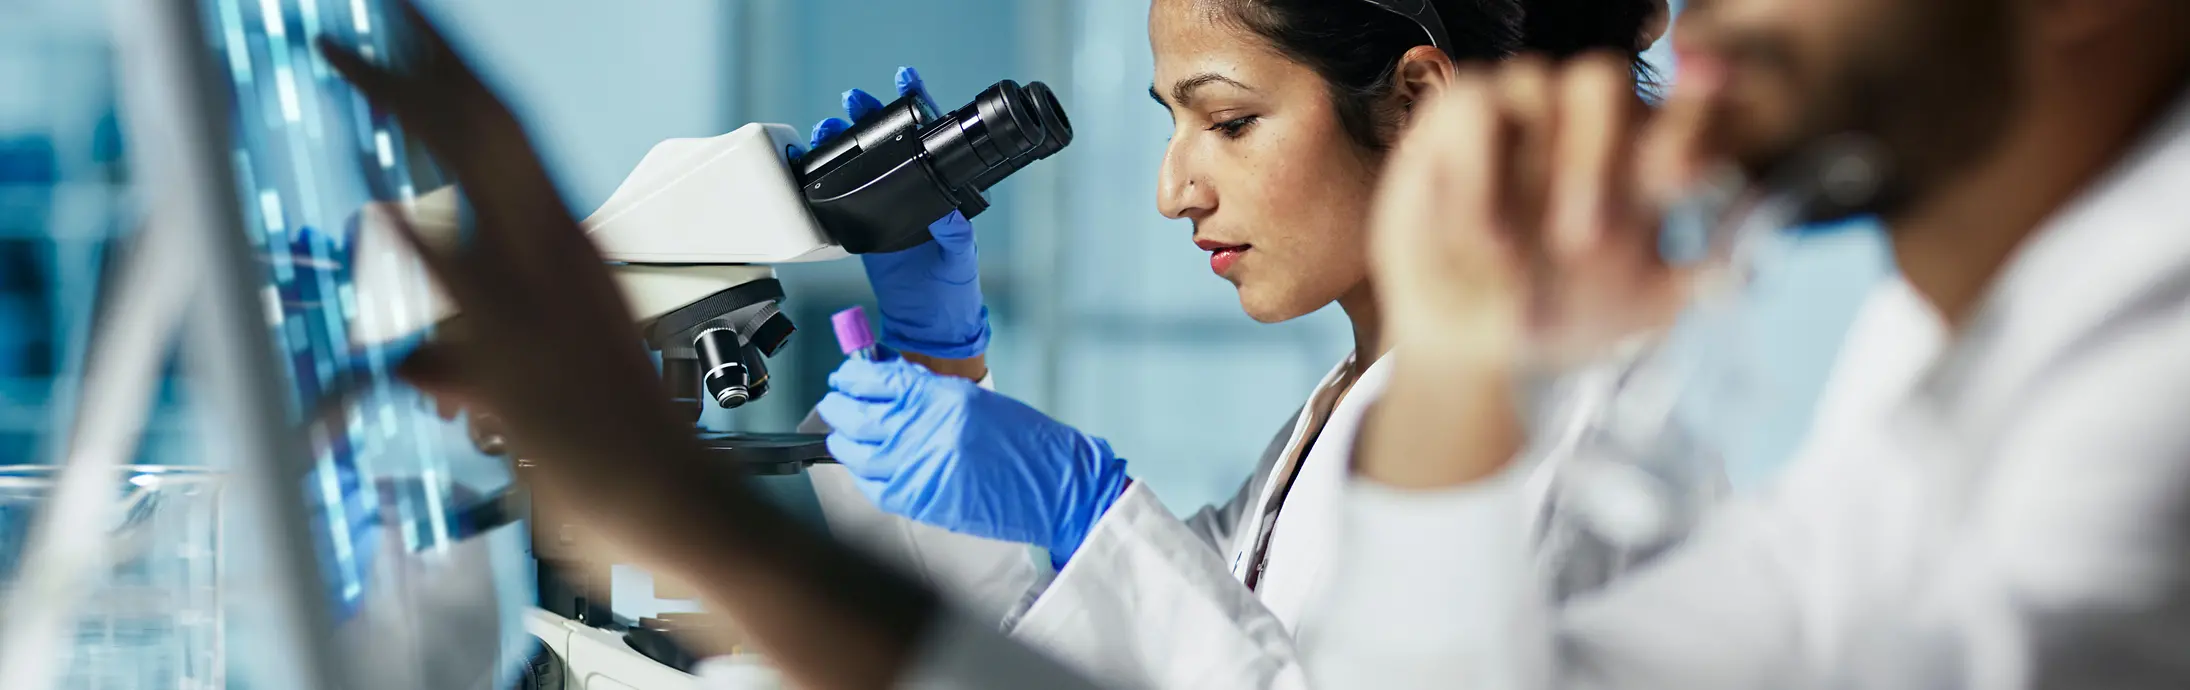 实验室里，一名女性坐在显微镜前观察样本，画面前方是一名留着胡子的男性正在看电脑屏幕